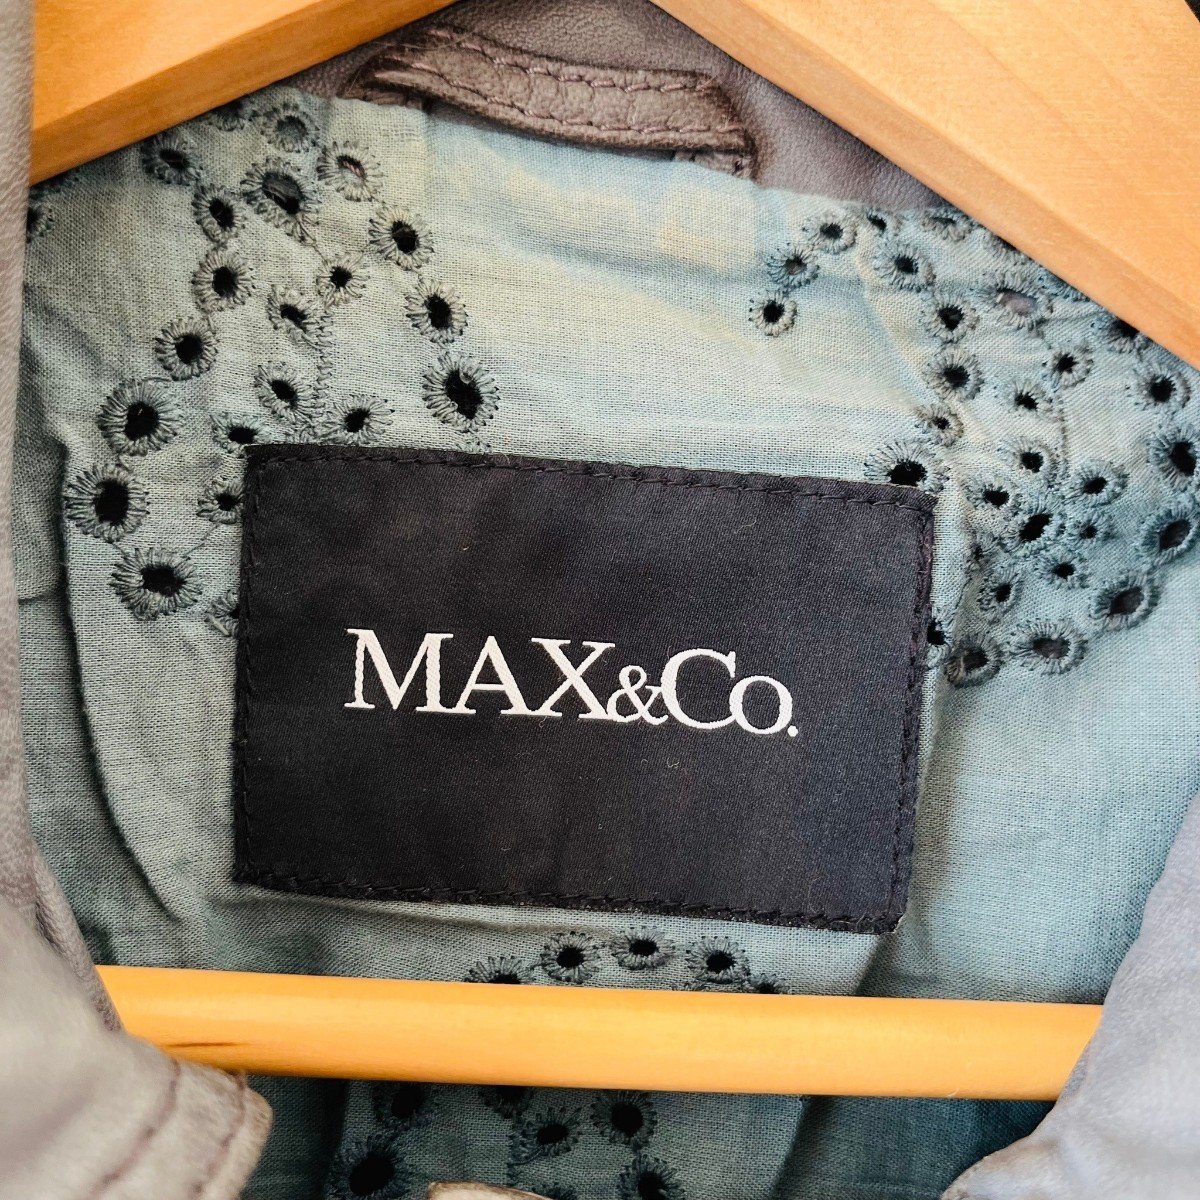 H5778cL Max&Co. マックスアンドコー サイズ42 (M位) レザージャケット 本革 羊革 ラム革 グレー レディース 革ジャン やわらかレザー 古着_画像7